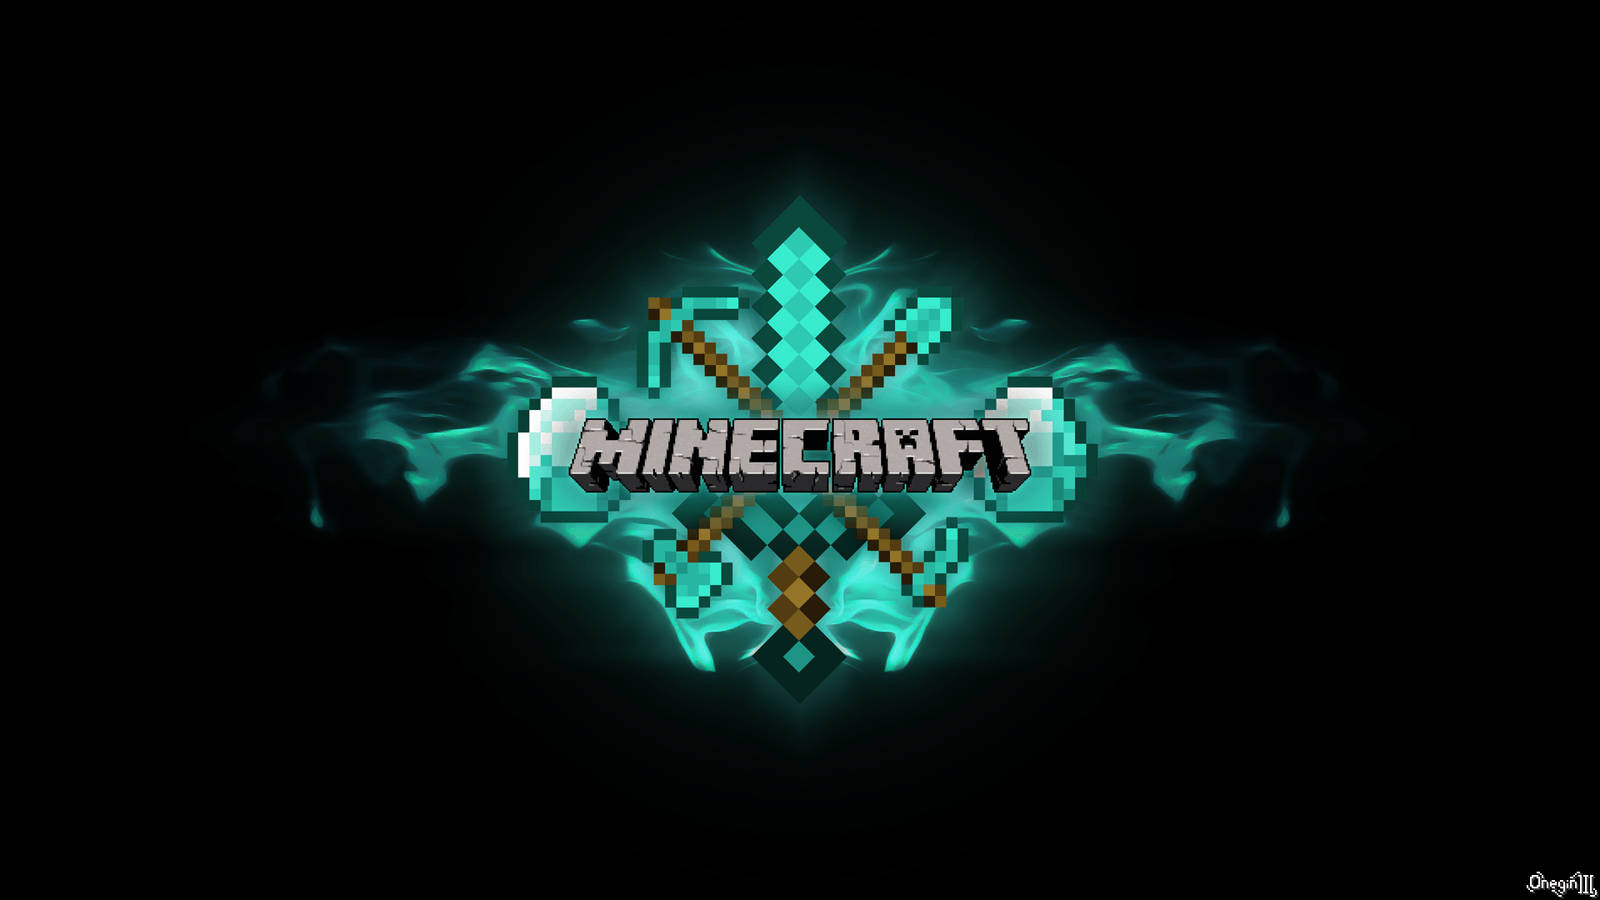 Cool Minecraft Title Art Wallpaper